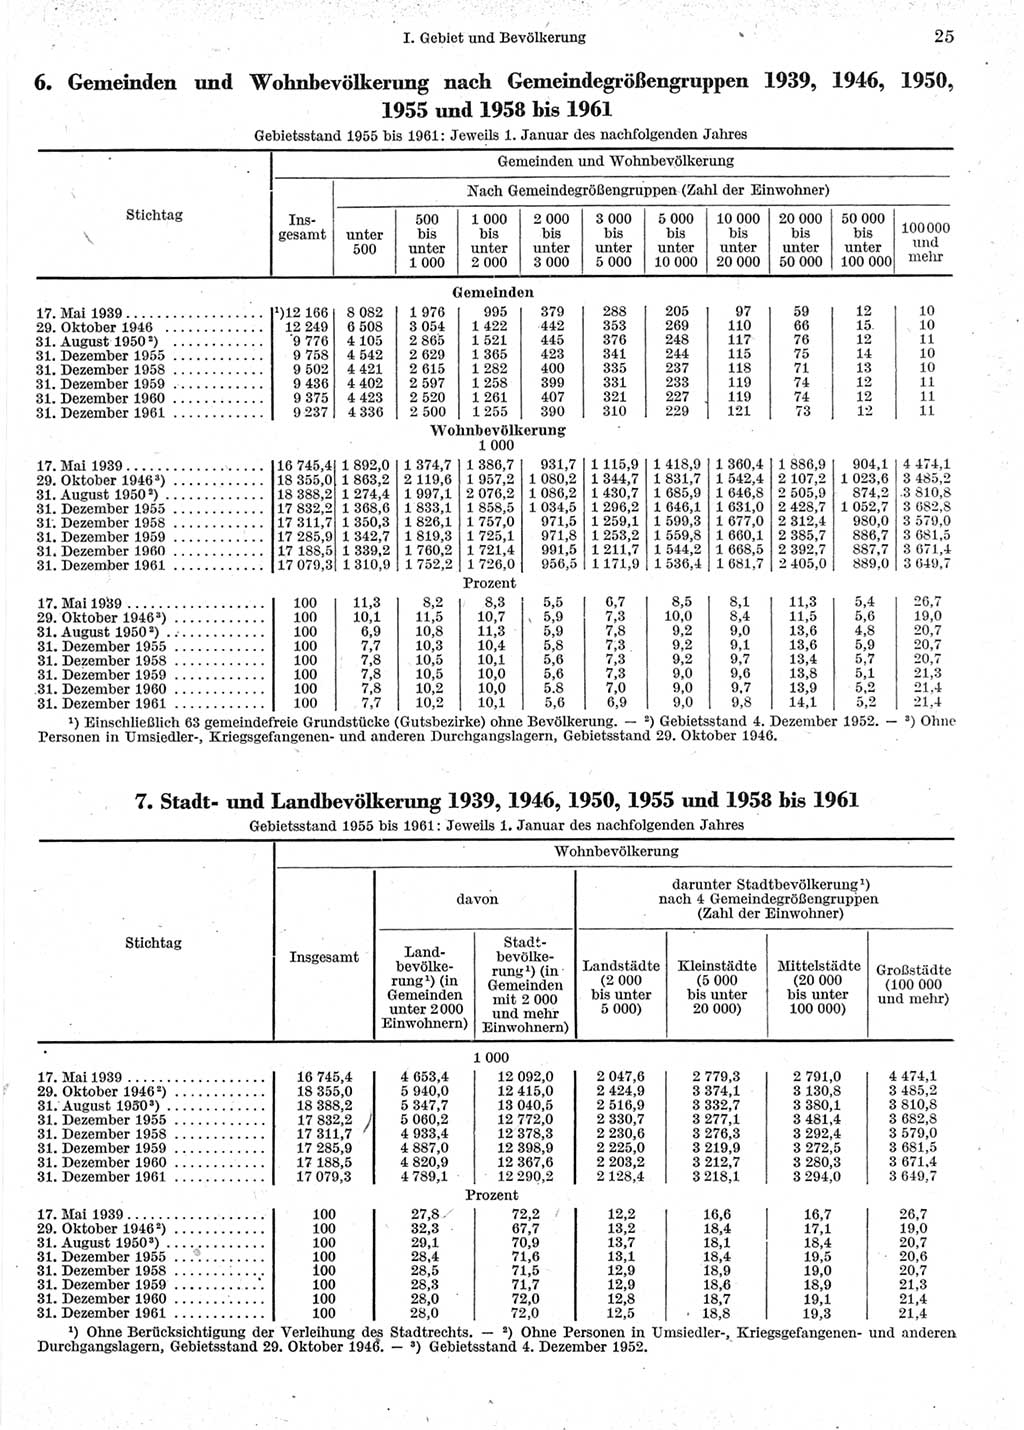 Statistisches Jahrbuch der Deutschen Demokratischen Republik (DDR) 1962, Seite 25 (Stat. Jb. DDR 1962, S. 25)